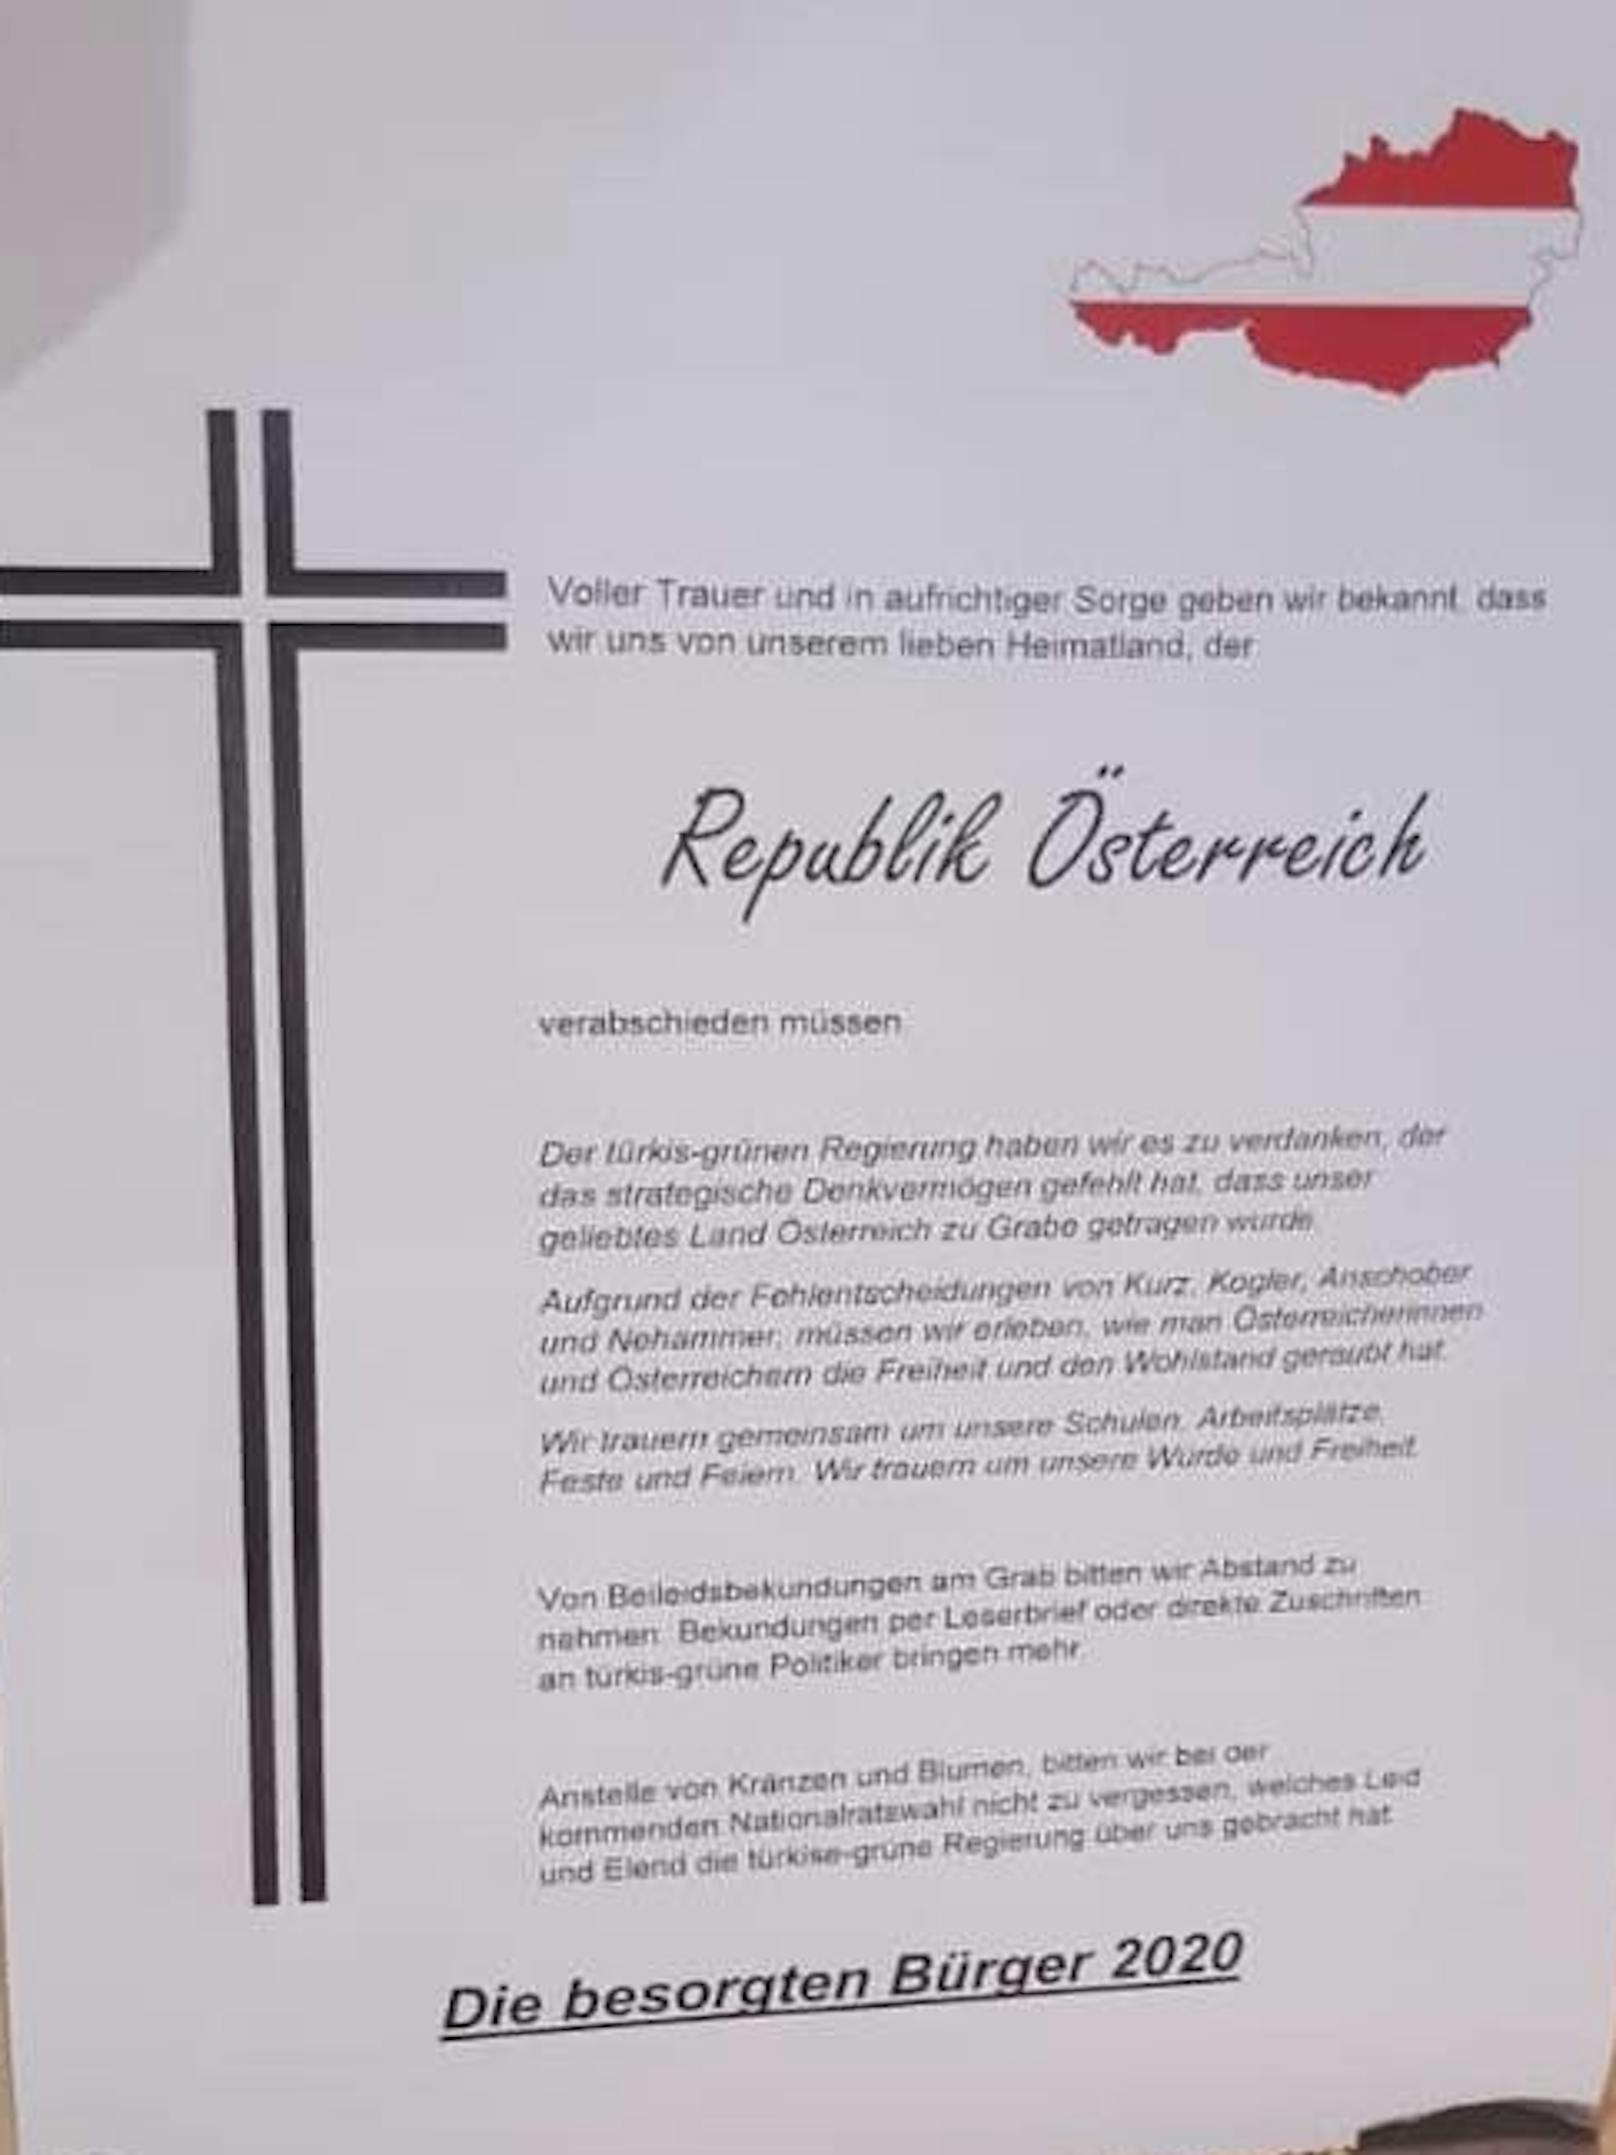 Der Partezettel der Republik Österreich wurde auch öffentlich ausgehängt.